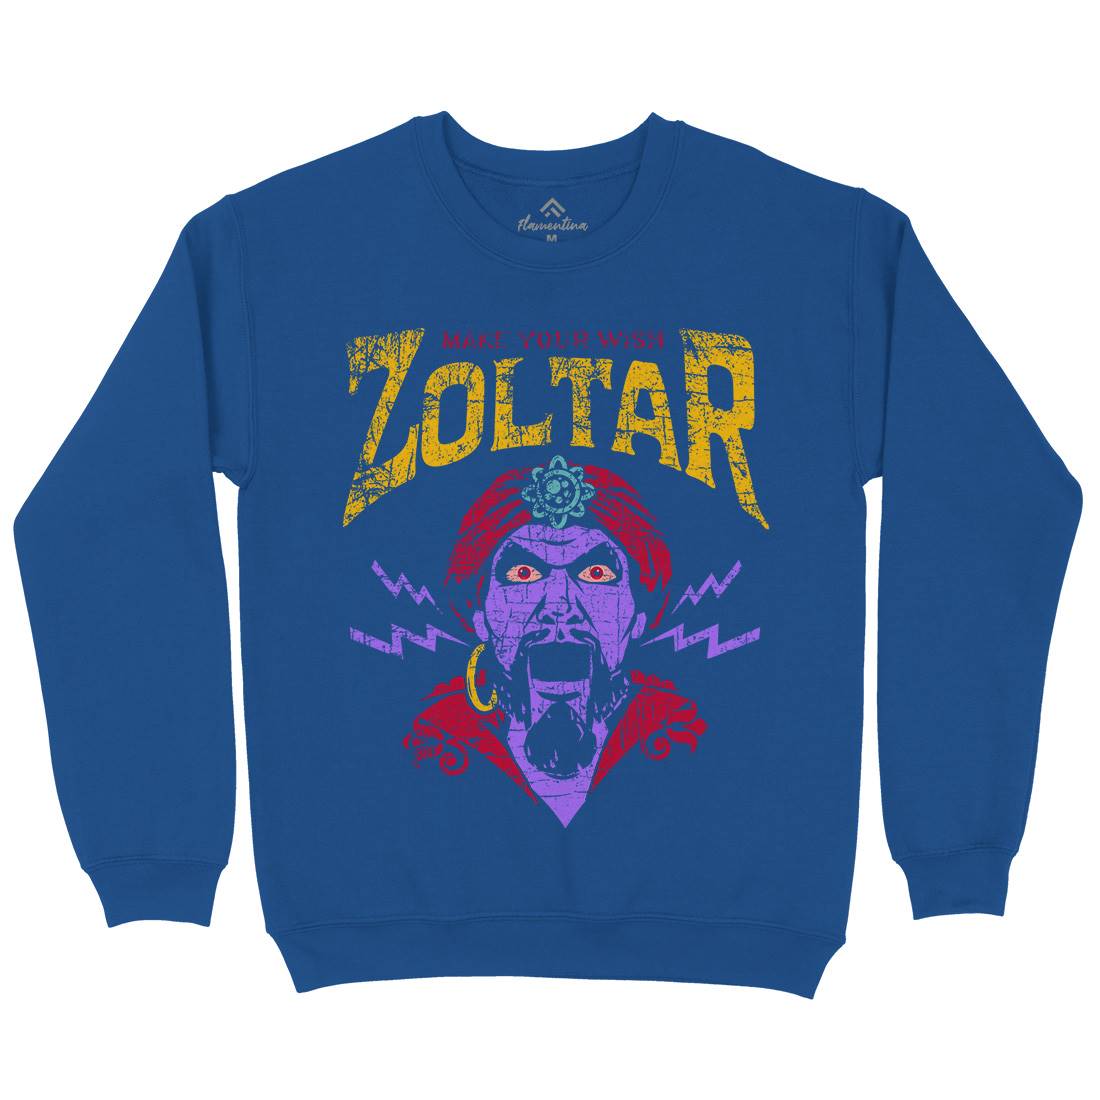 Zoltar Kids Crew Neck Sweatshirt Retro D272